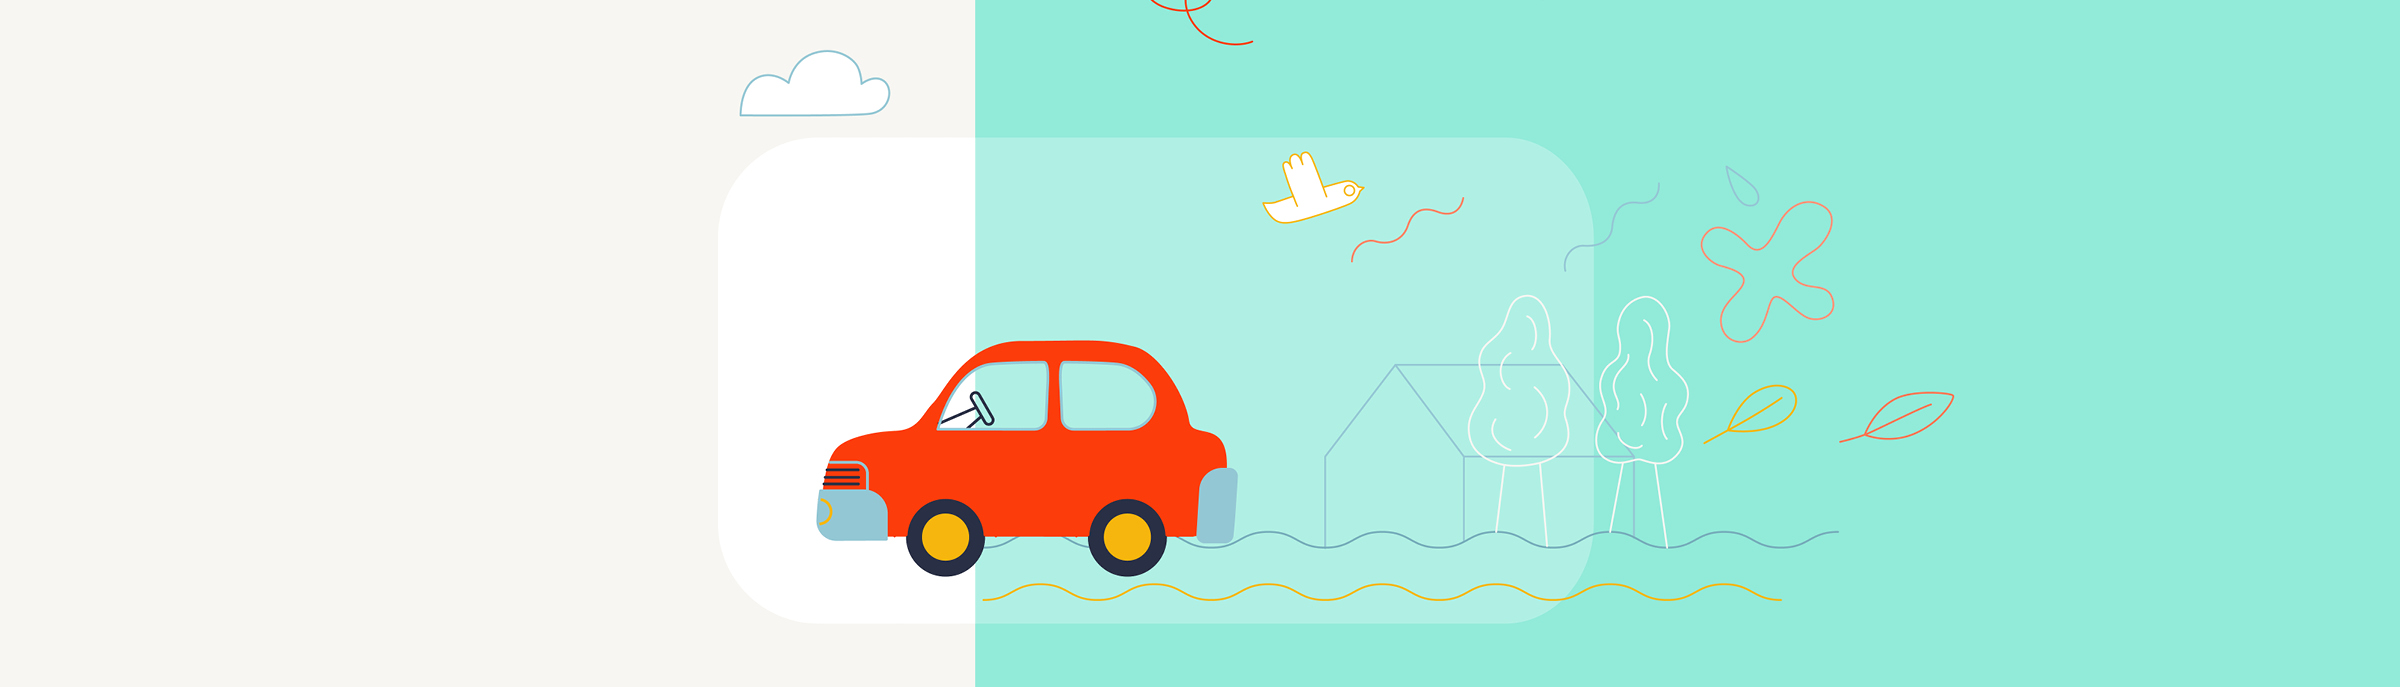 Dankzij de juiste apps kunt u zonder zorgen met de auto op vakantie